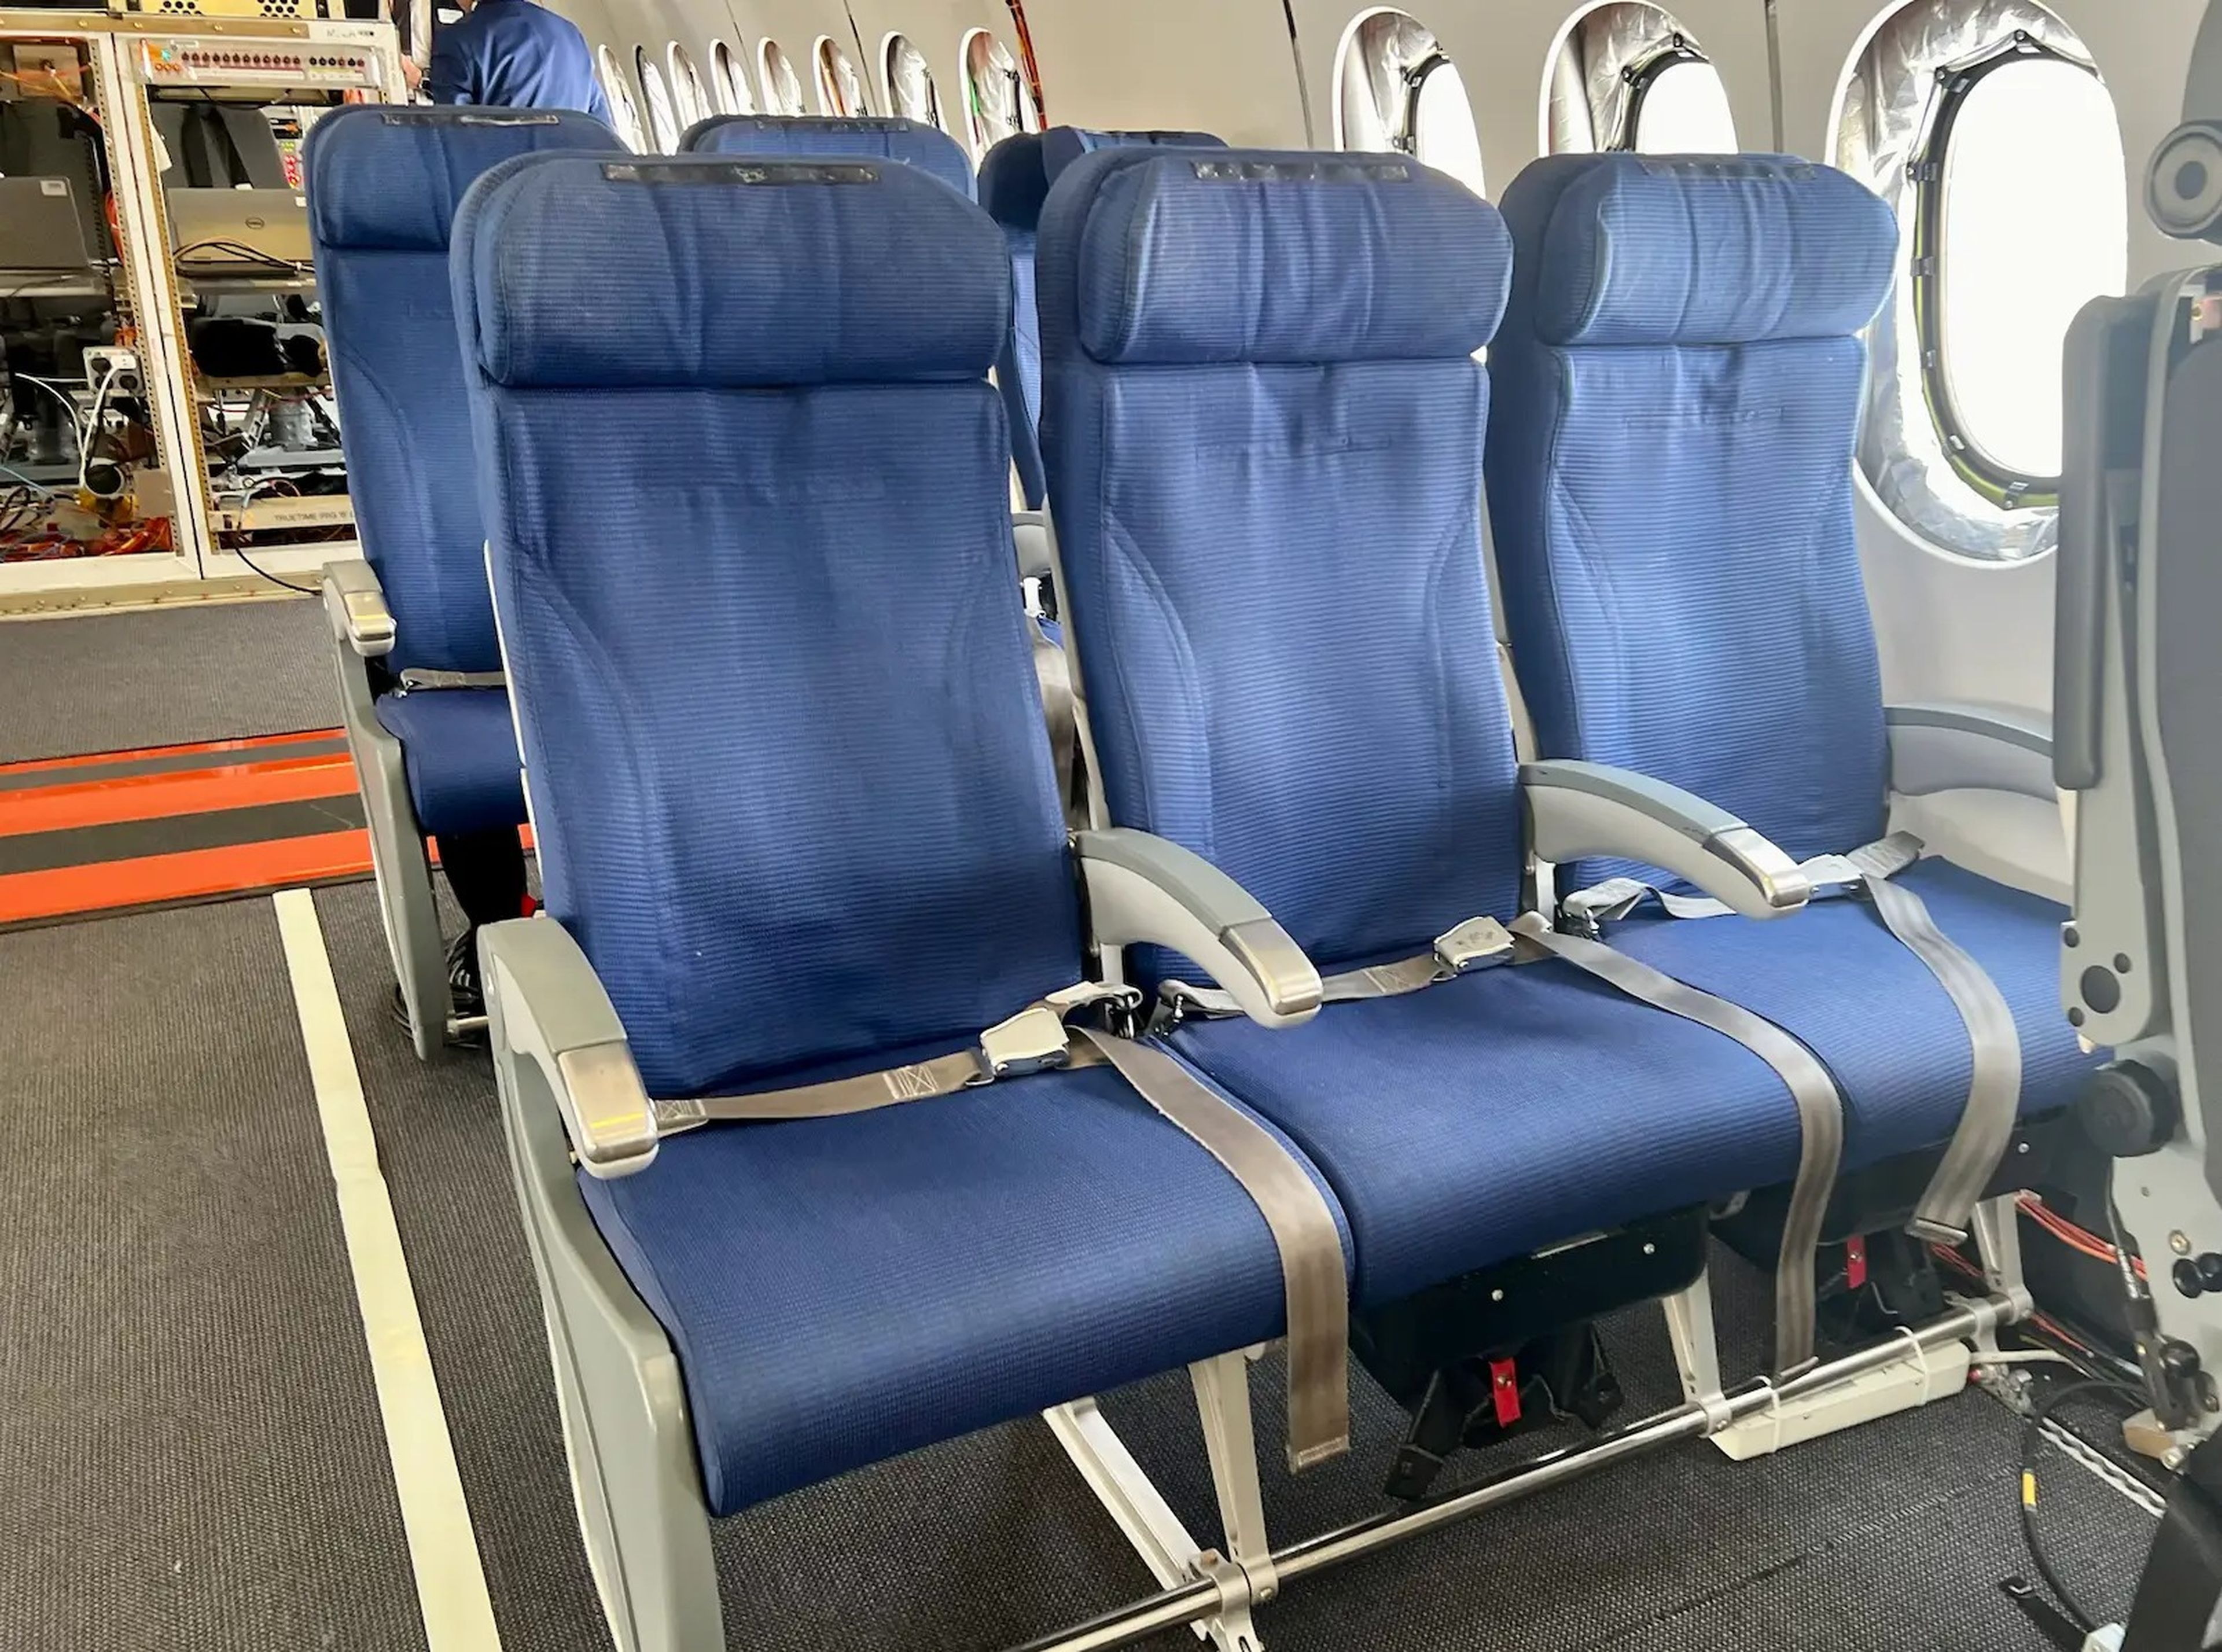 Hay filas de asientos de pasajeros para transportar a los ingenieros.